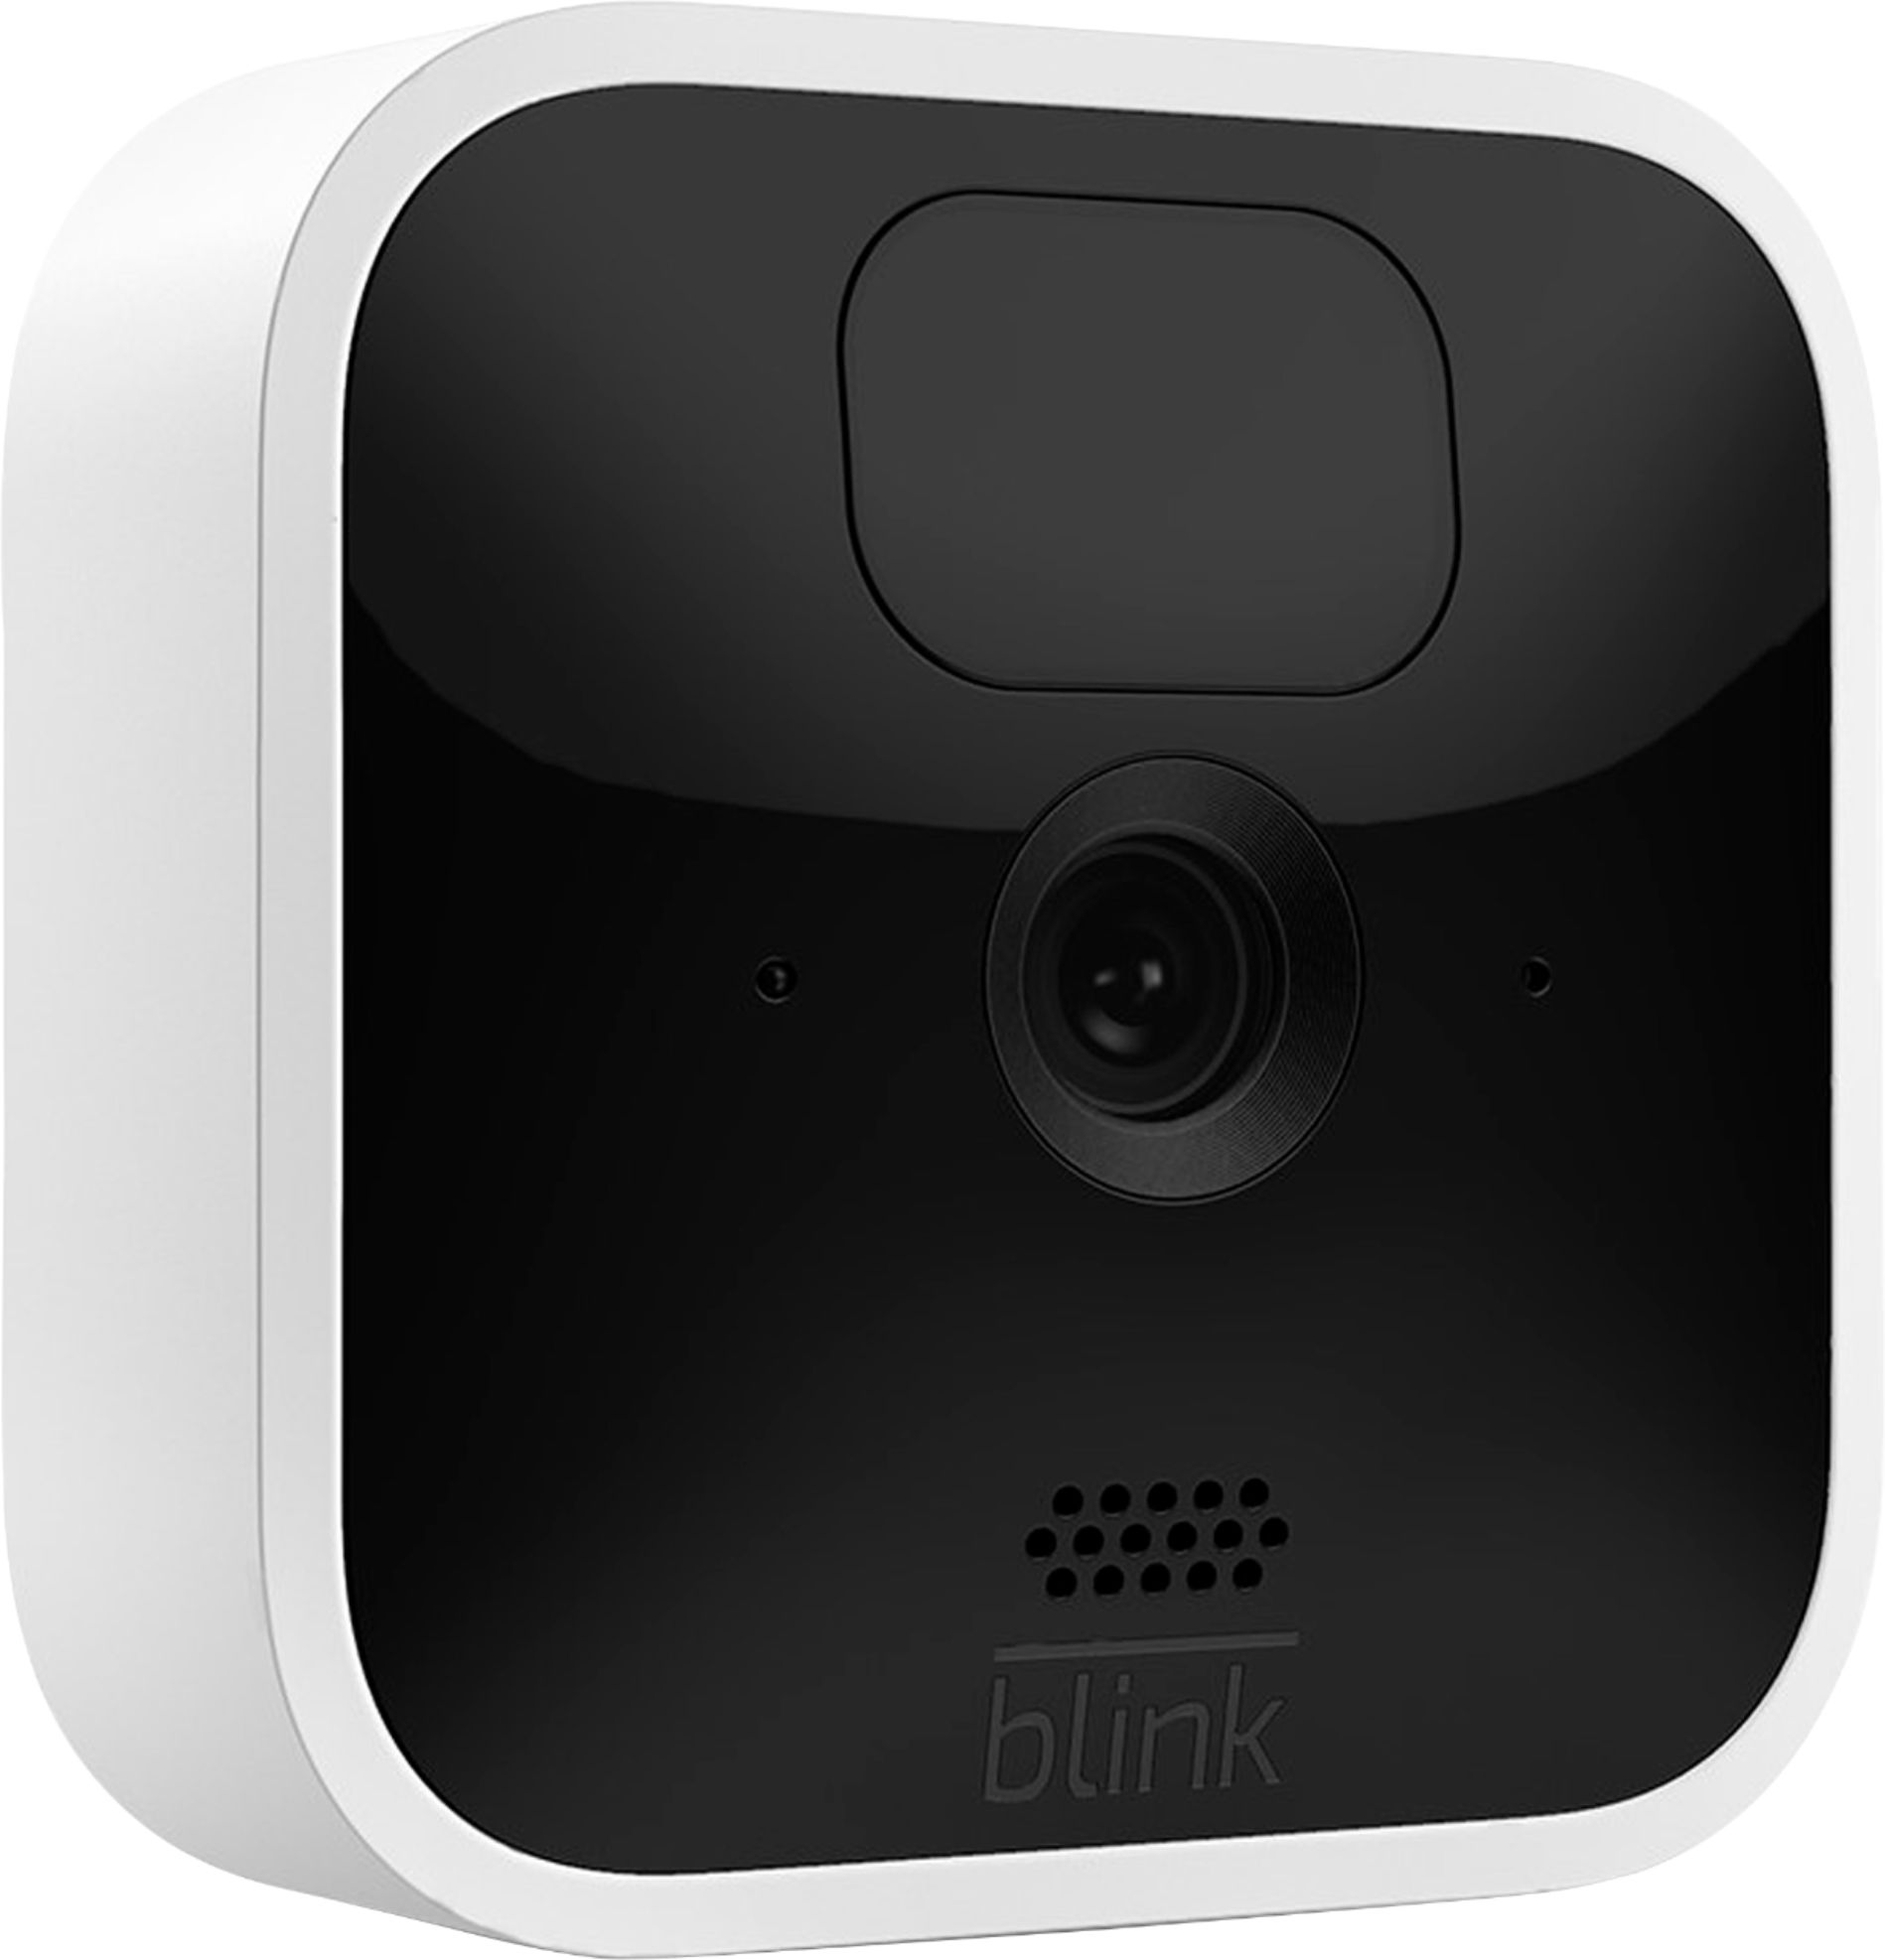 Blink Camera - Pet Camera For Home